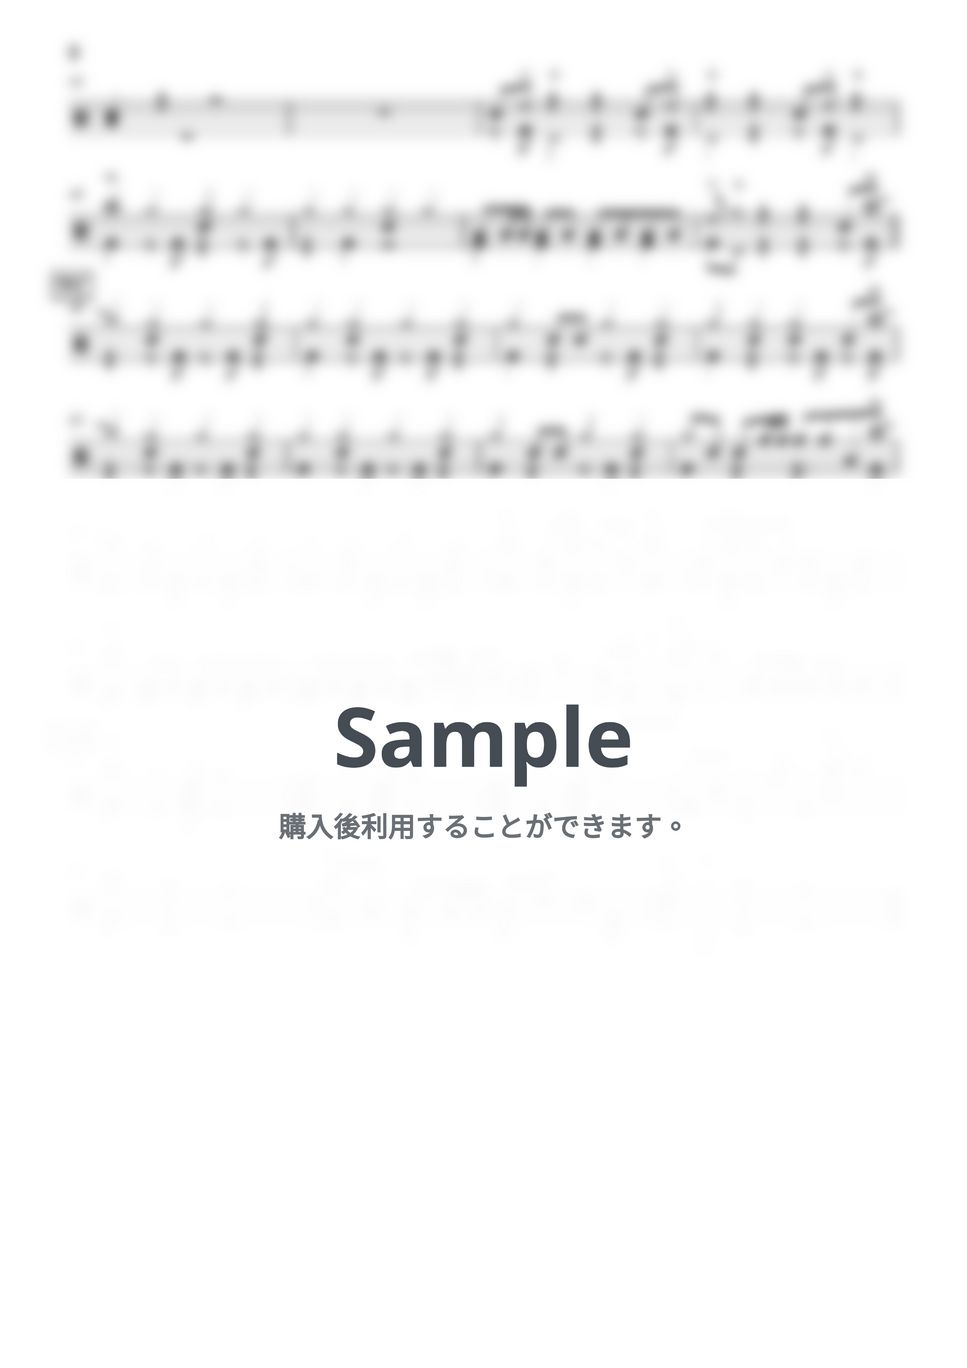 緑黄色社会 - 花になって (short ver.)【ドラムかんたん演奏】 by Kornz MUSIC LESSON.net